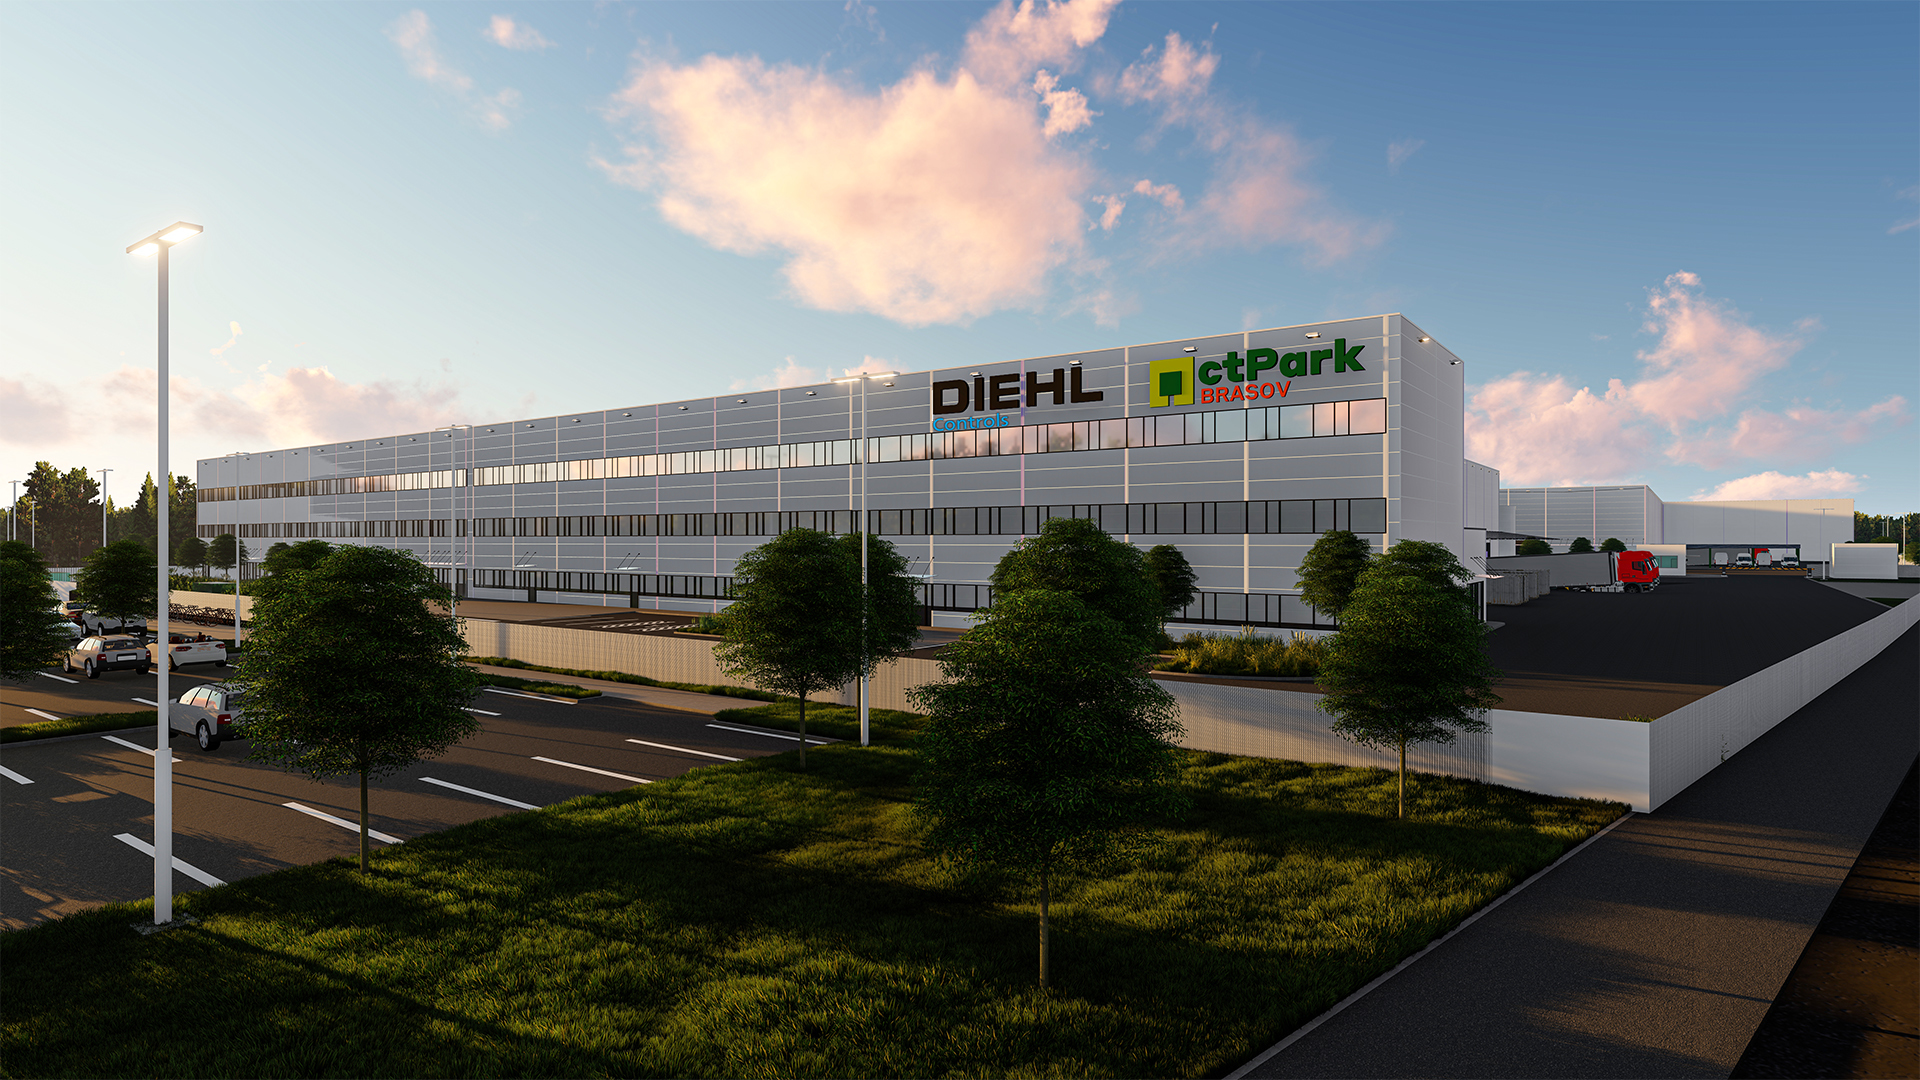 Brașovul industrial. Compania germană Diehl Controls investește peste 50 mil. euro într-o fabrică de componente electronice 1